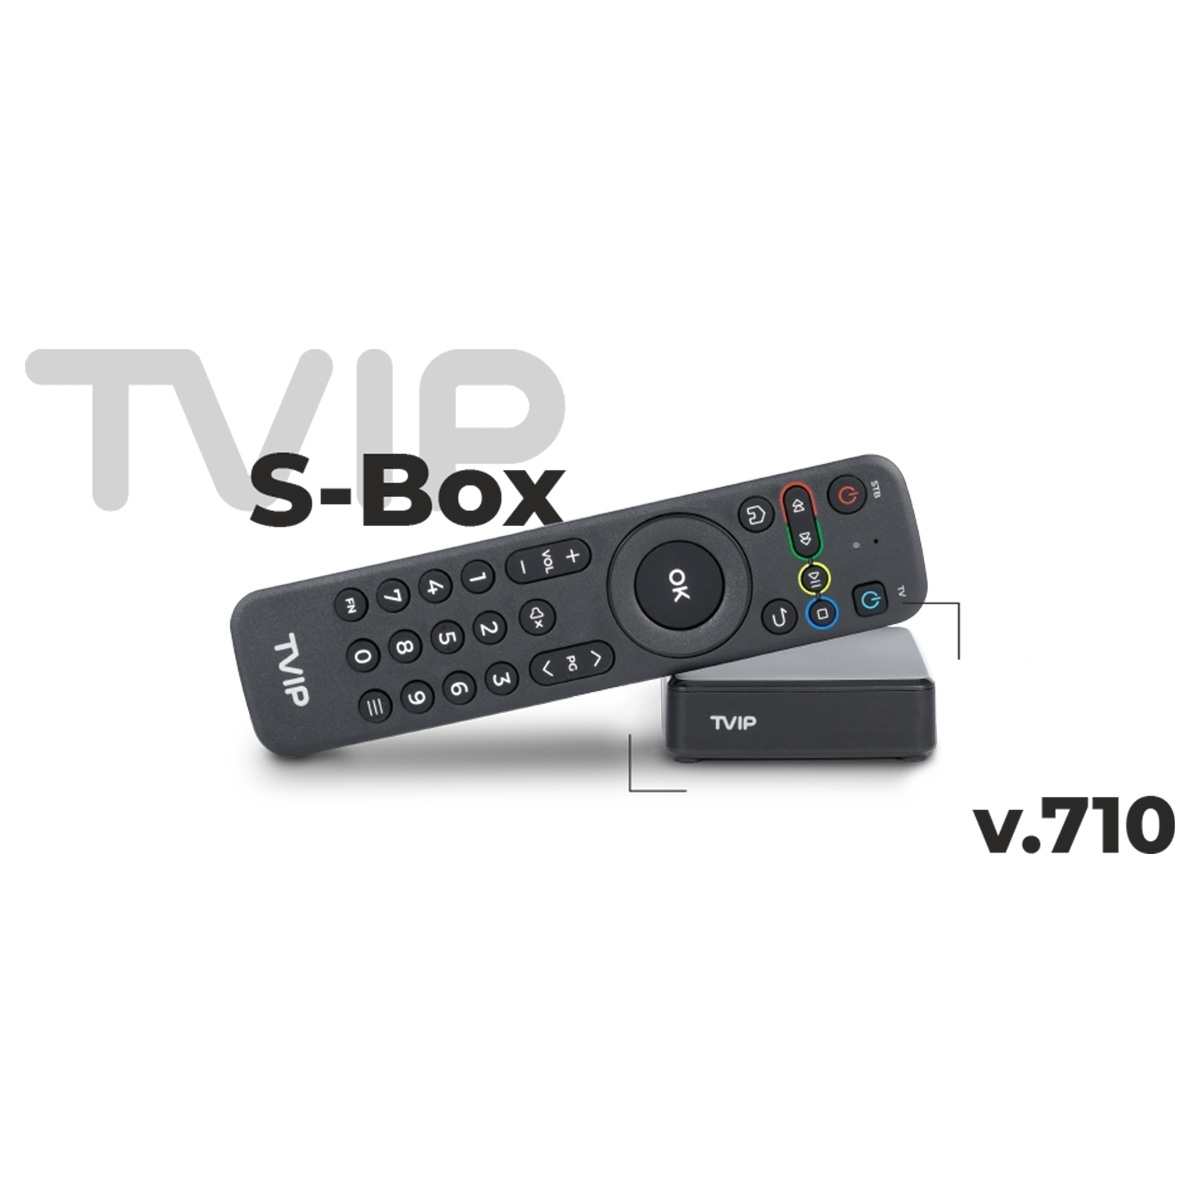 v.710 TVIP S-Box GB 8